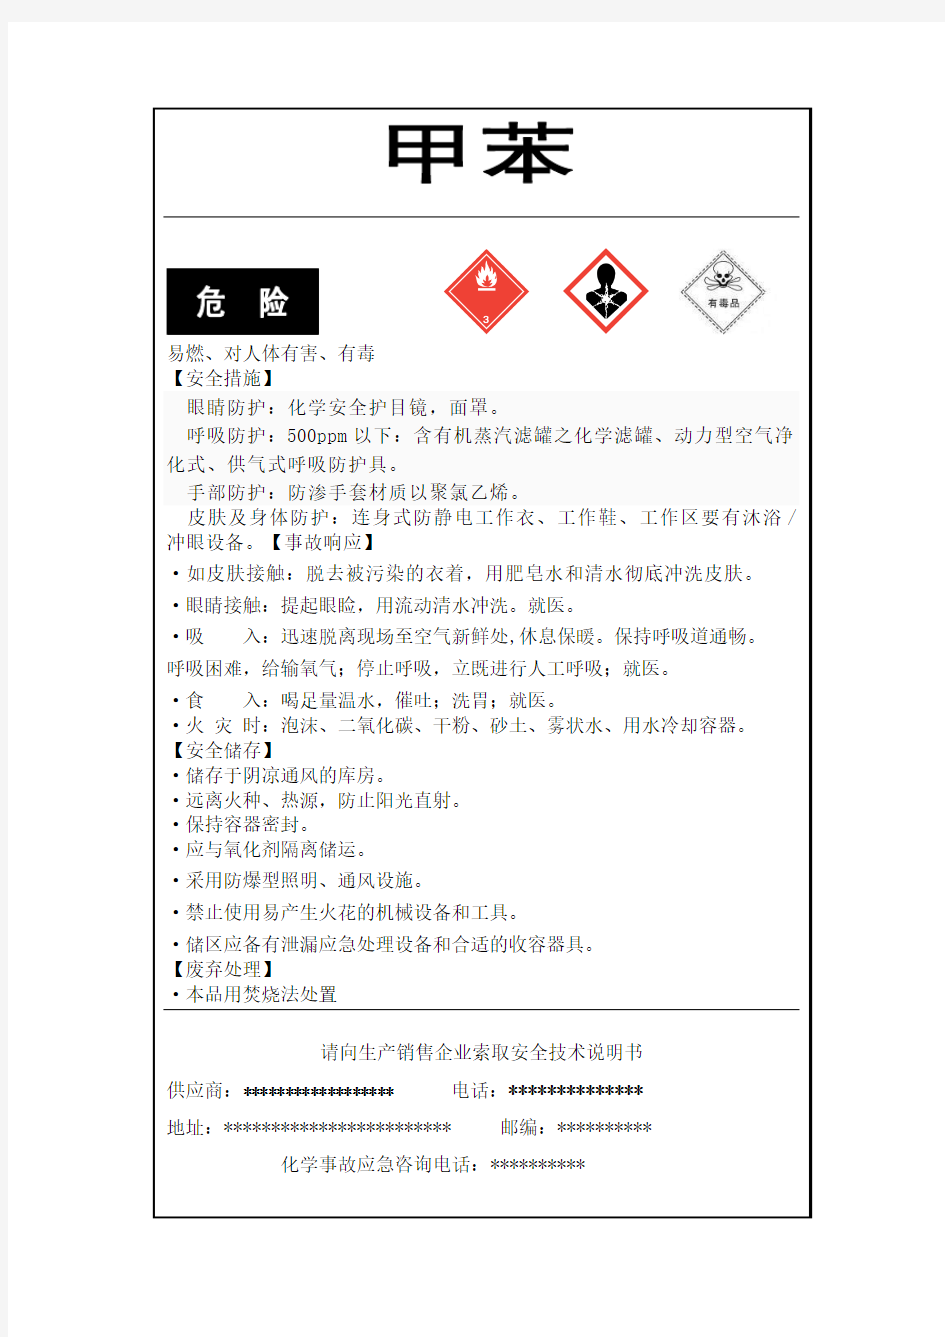 甲苯危险化学品安全标签样例(最新版)